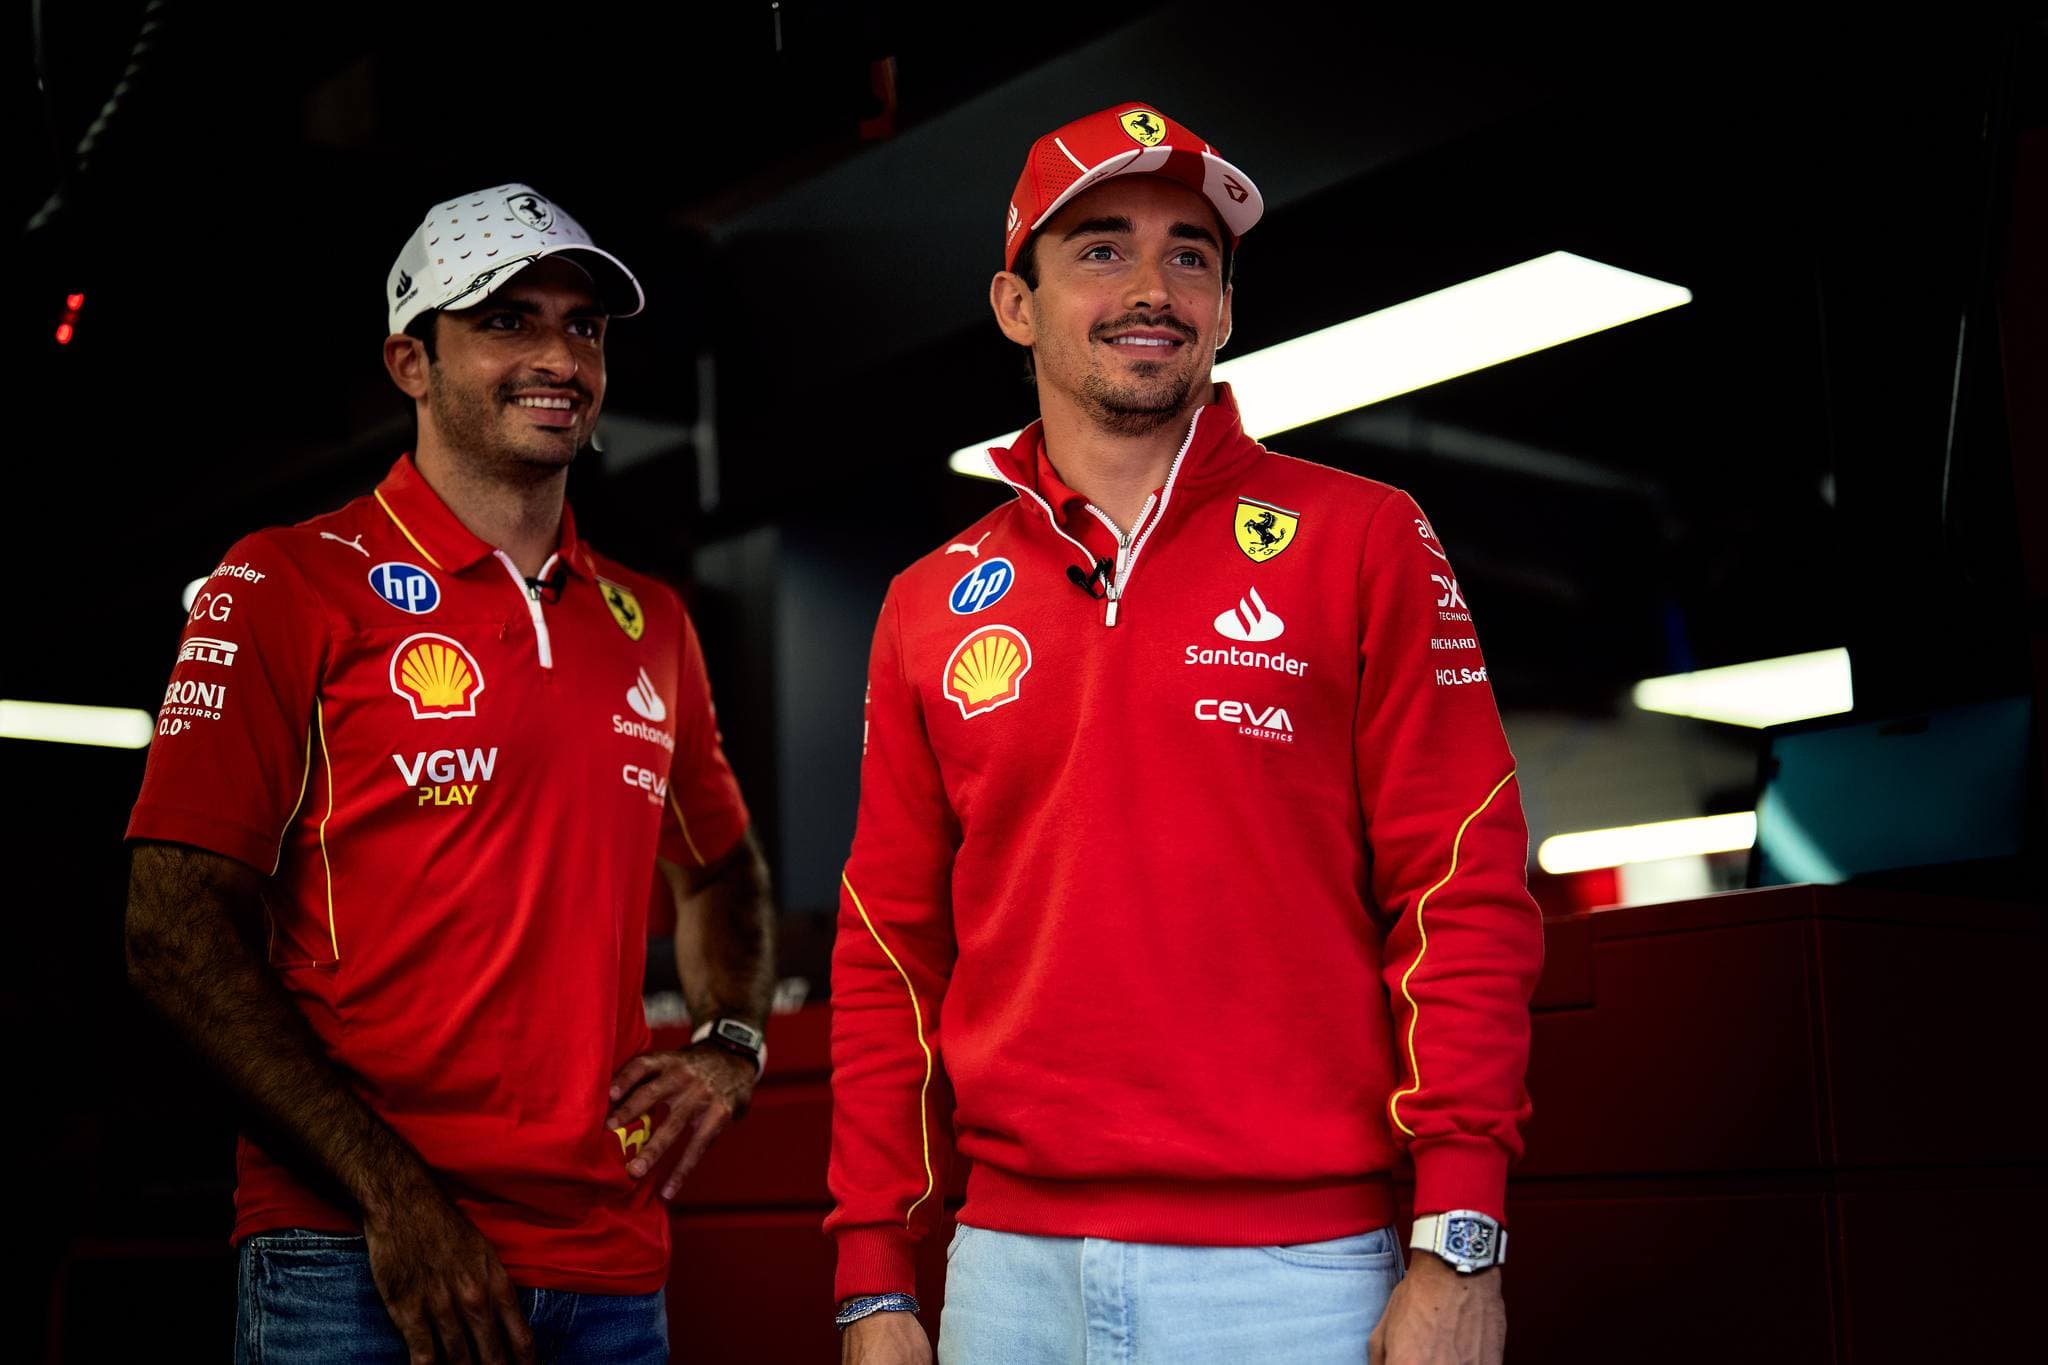 Kierowcy Ferrari mają do siebie pretensje po twardej walce w GP Hiszpanii